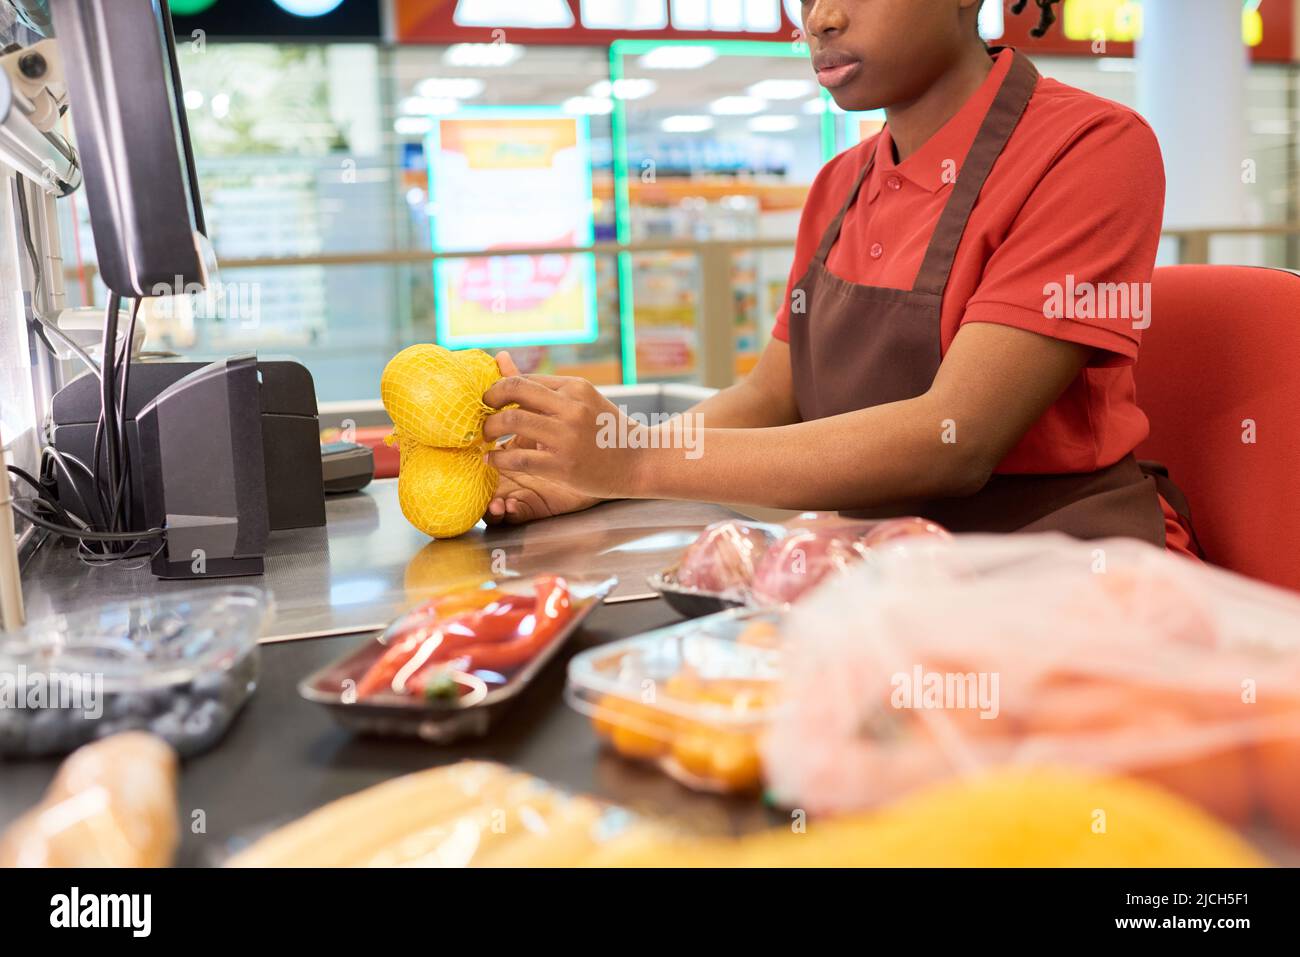 Junge afroamerikanische Verkäuferin, die Zitronen in der Tasche wiegt und sie und andere Lebensmittel scannt, während sie an der Theke sitzt Stockfoto